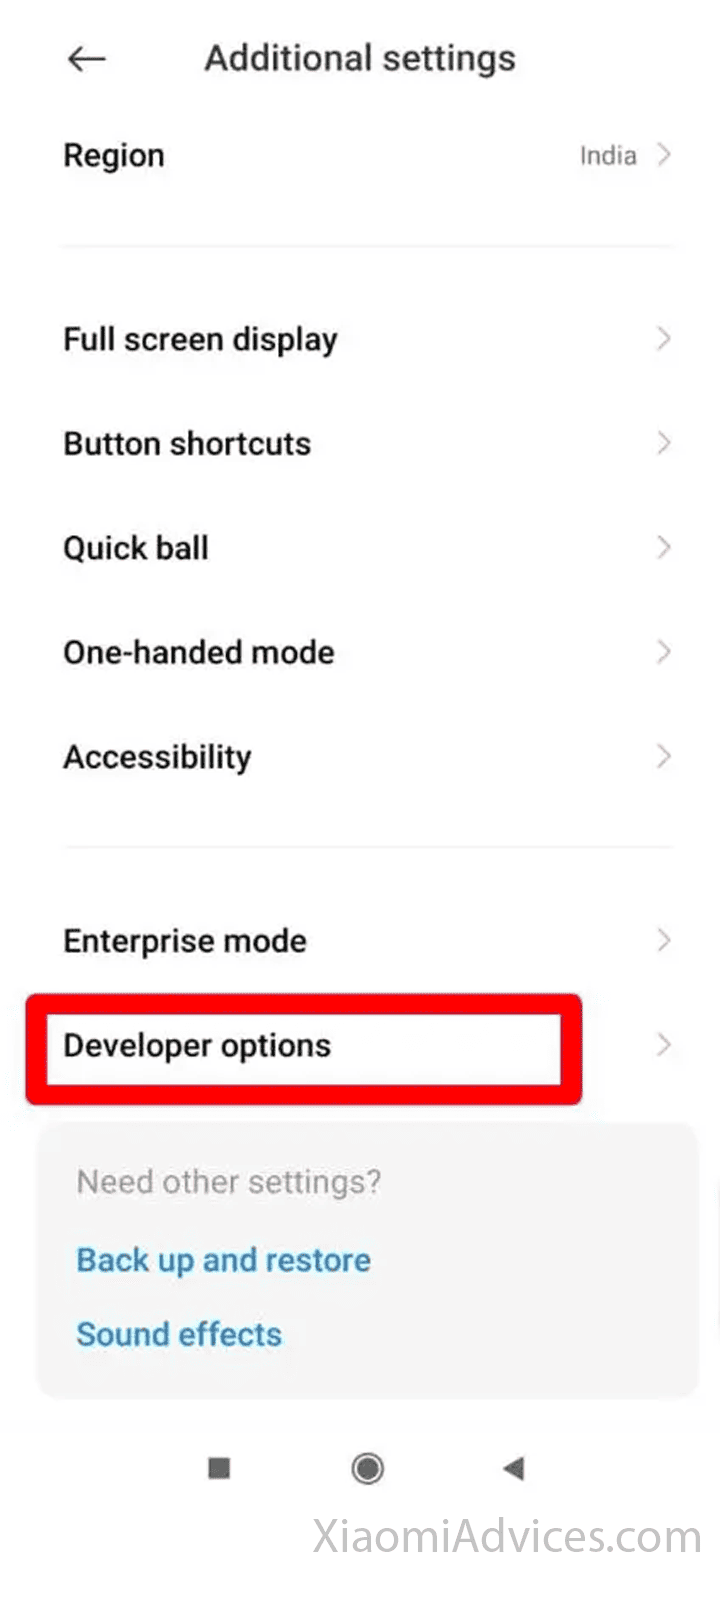 Developer options